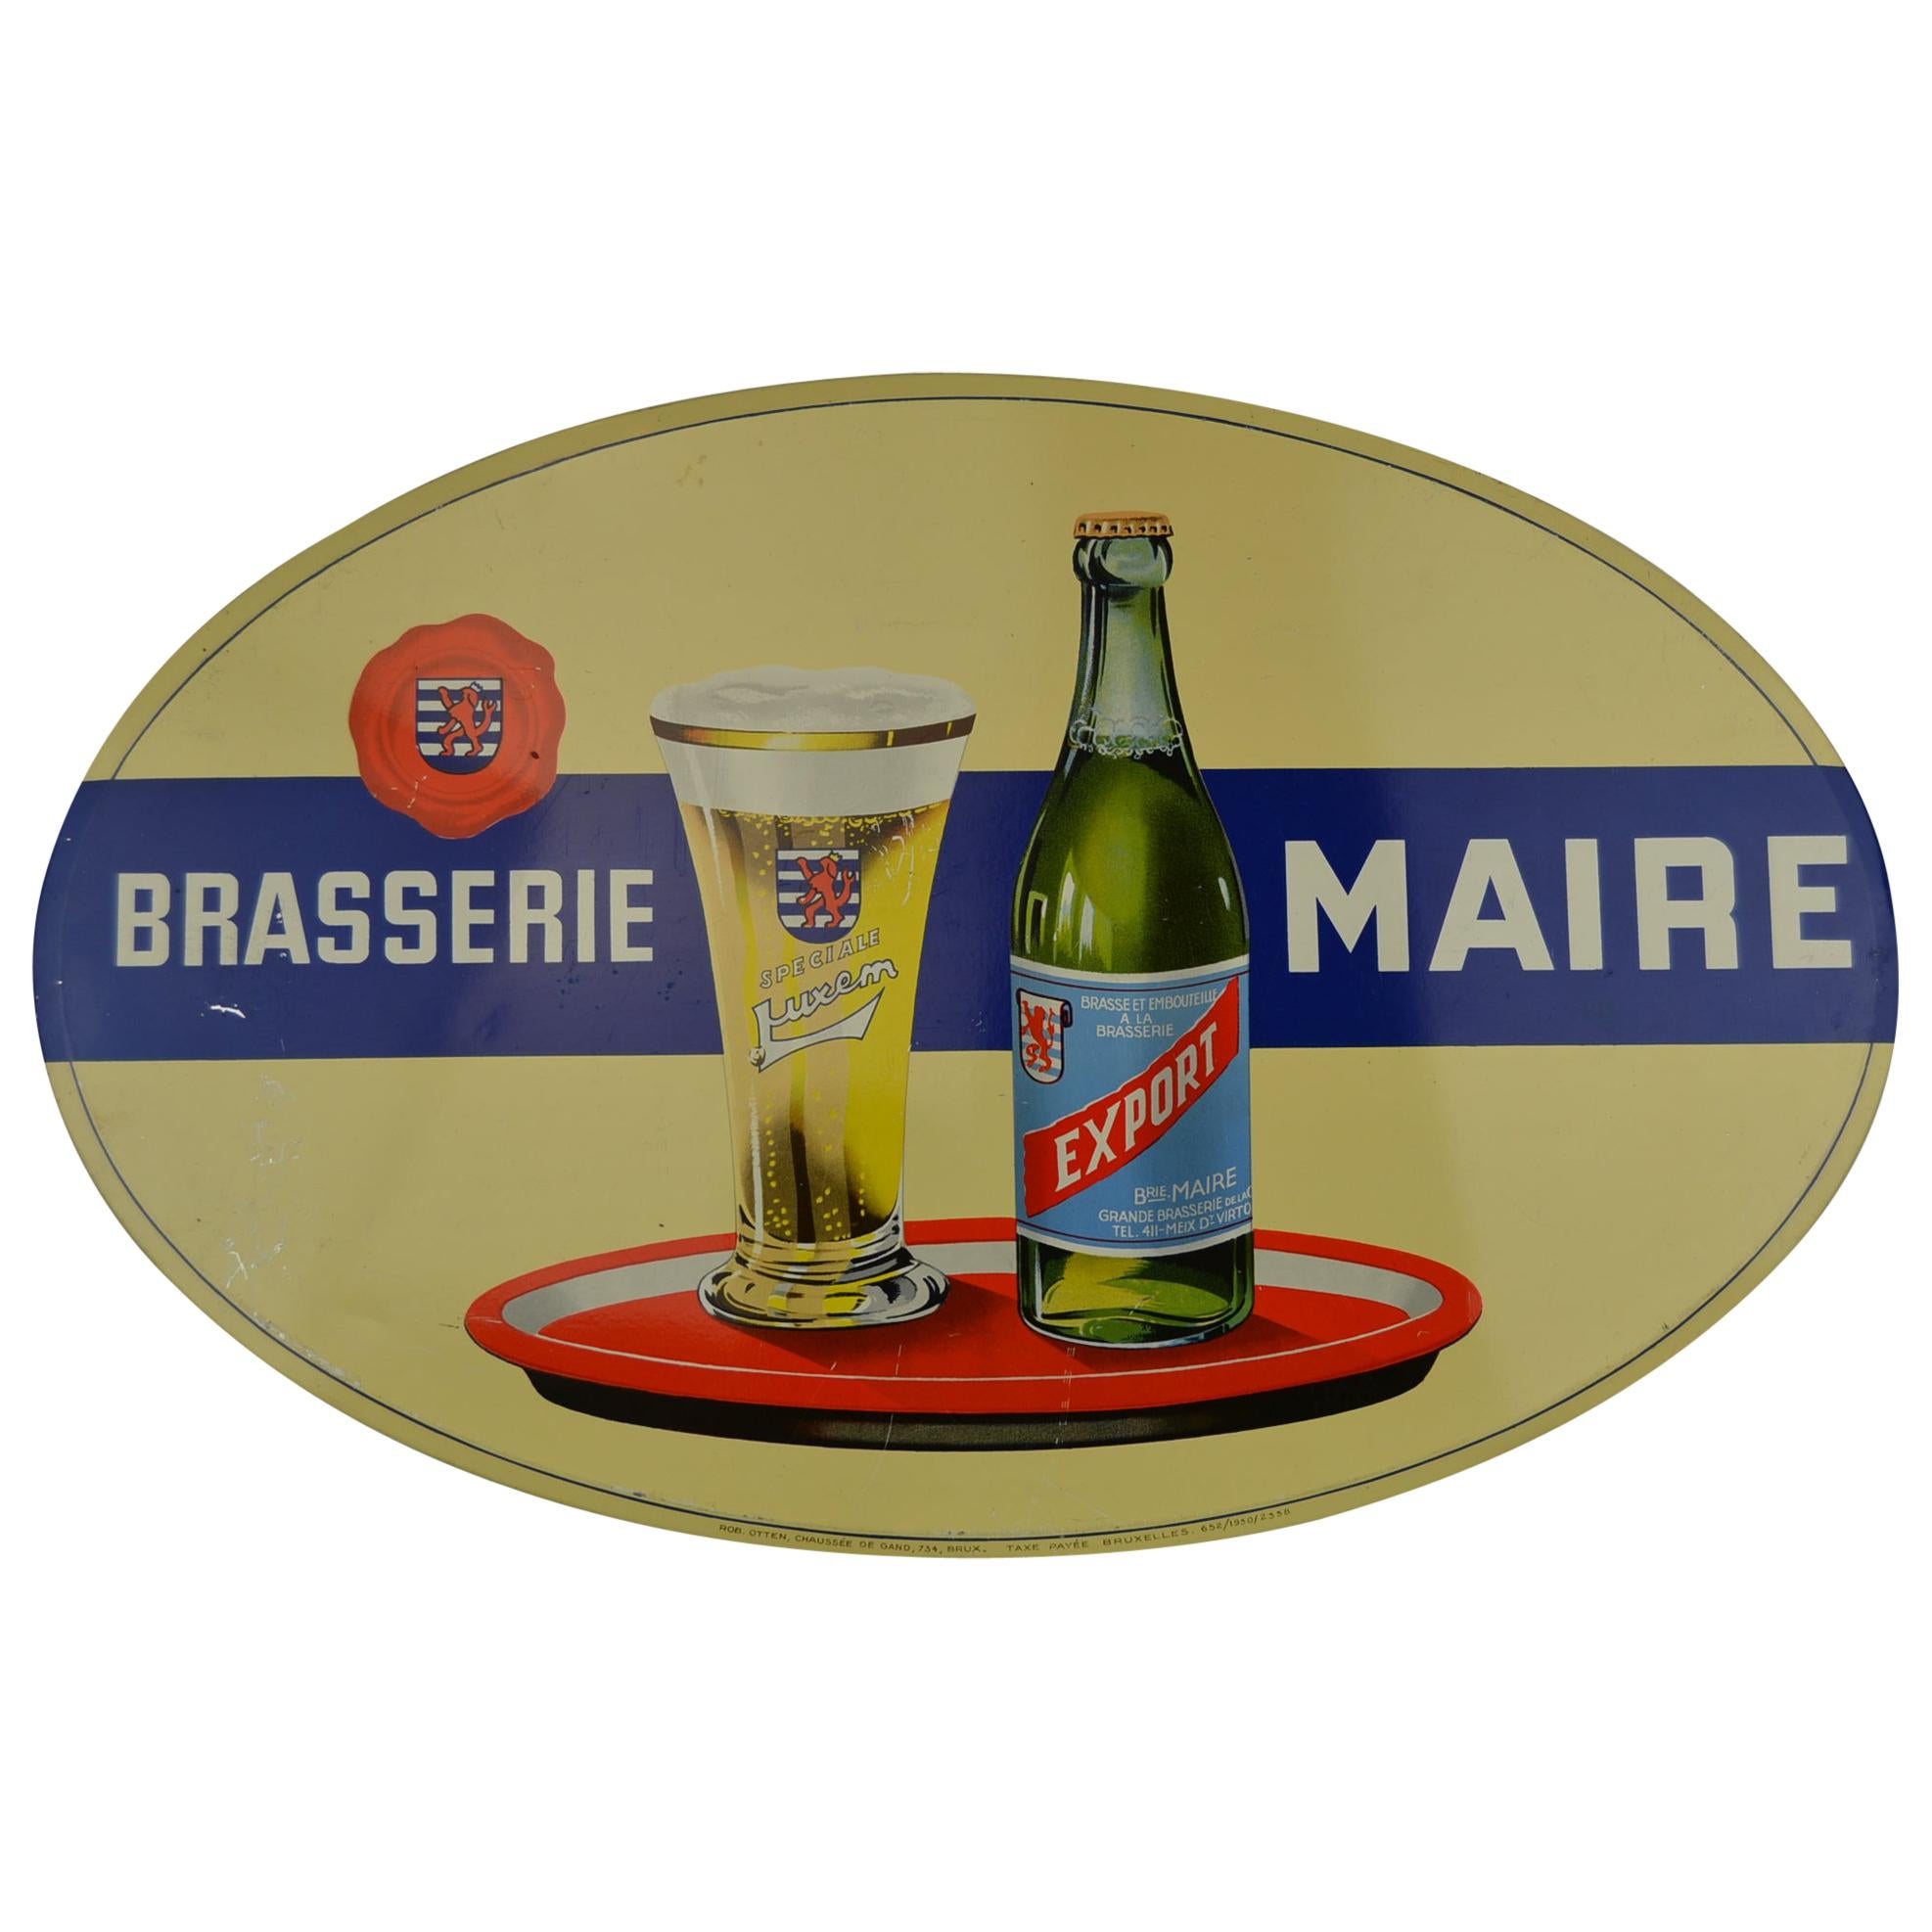 1950s Tin Advertising Sign for Belgian Beer Brasserie Maire